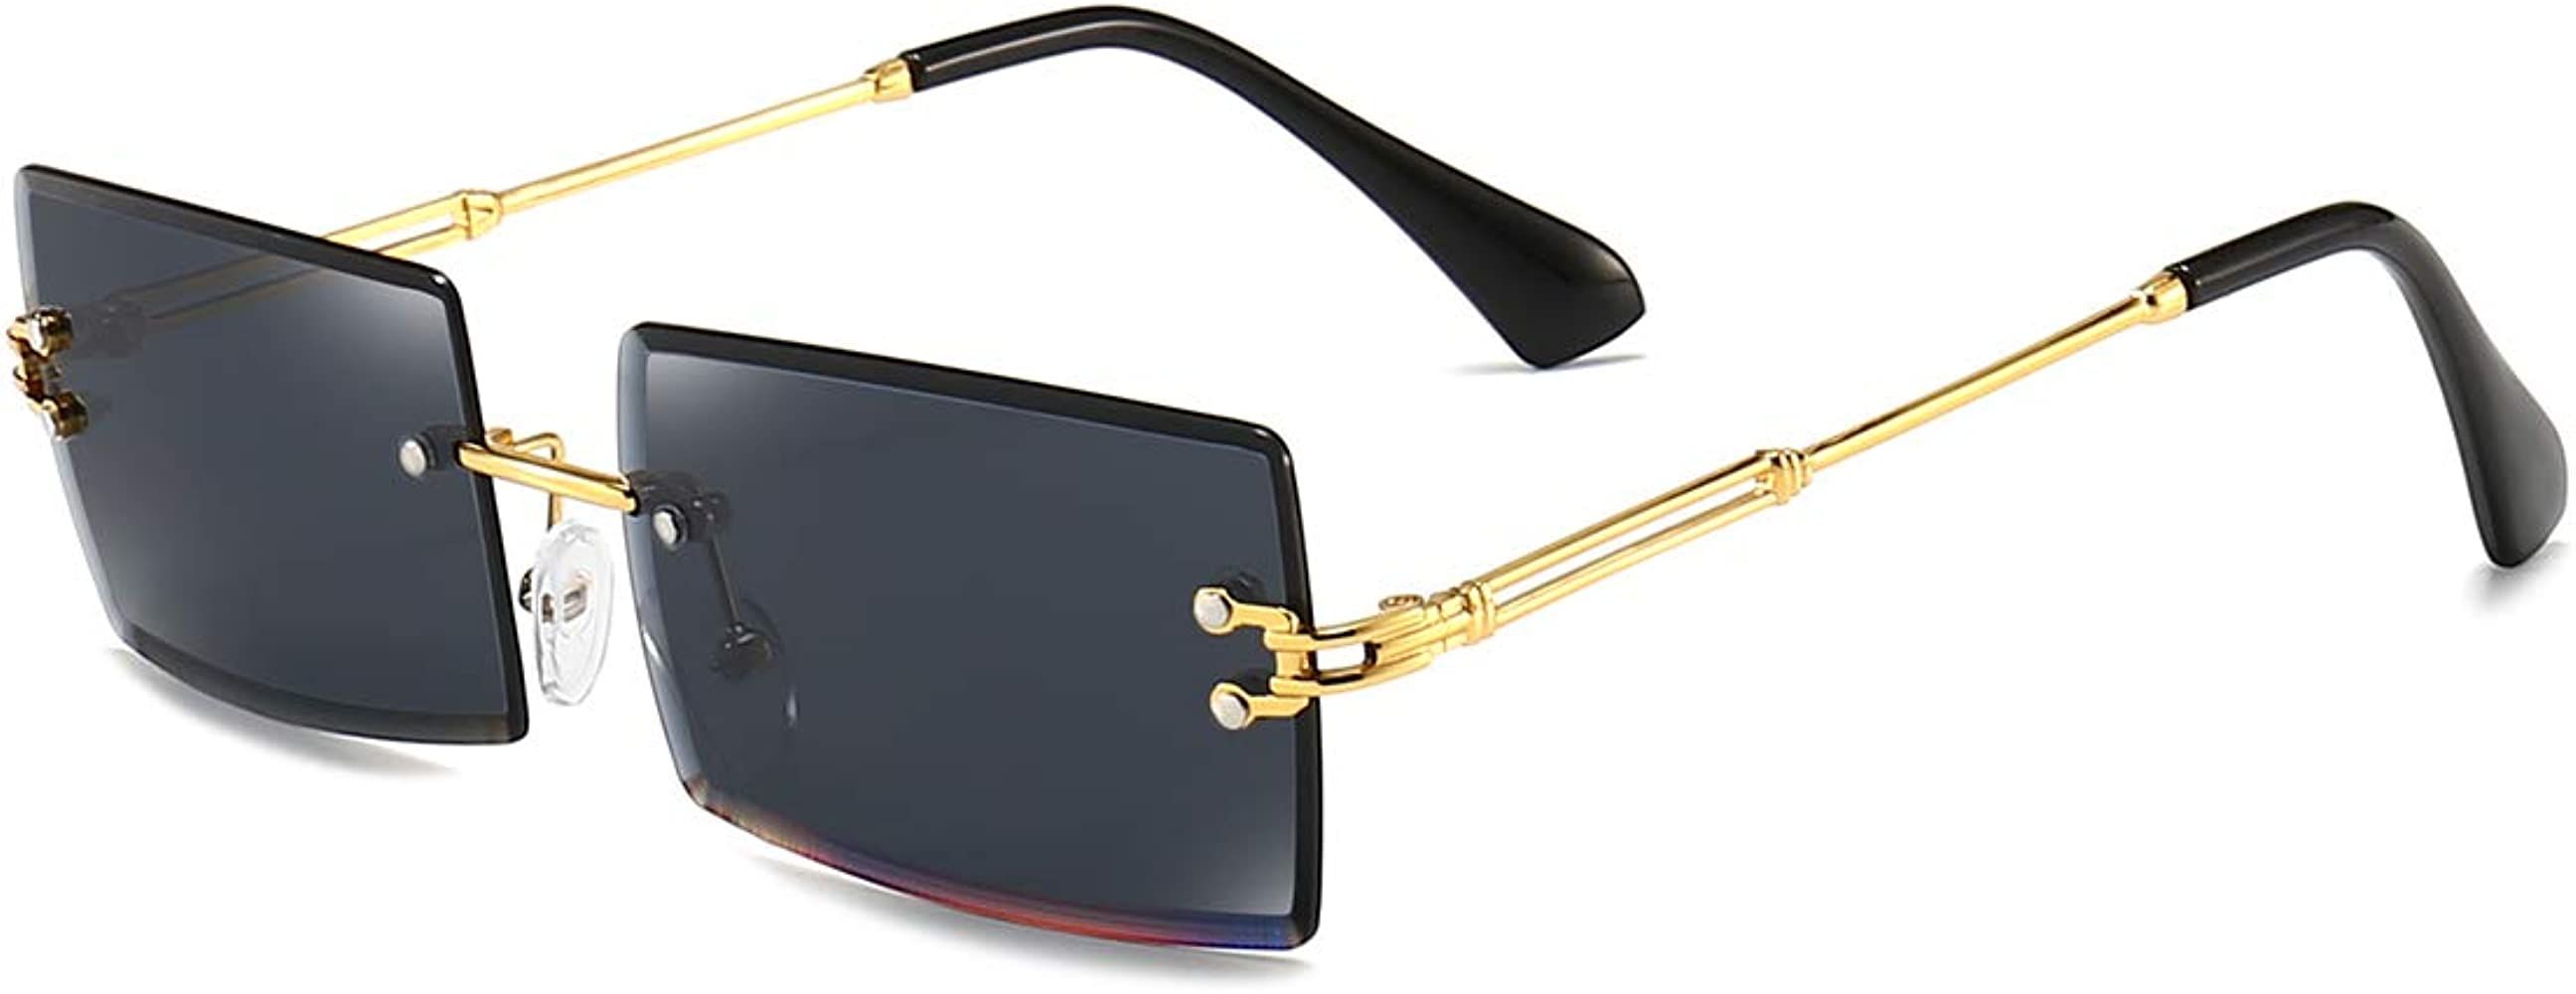 Dollger Rimless Rectangle Sunglasses for Women Fashion Frameless Square Glasses for Men Ultraligh... | Amazon (US)